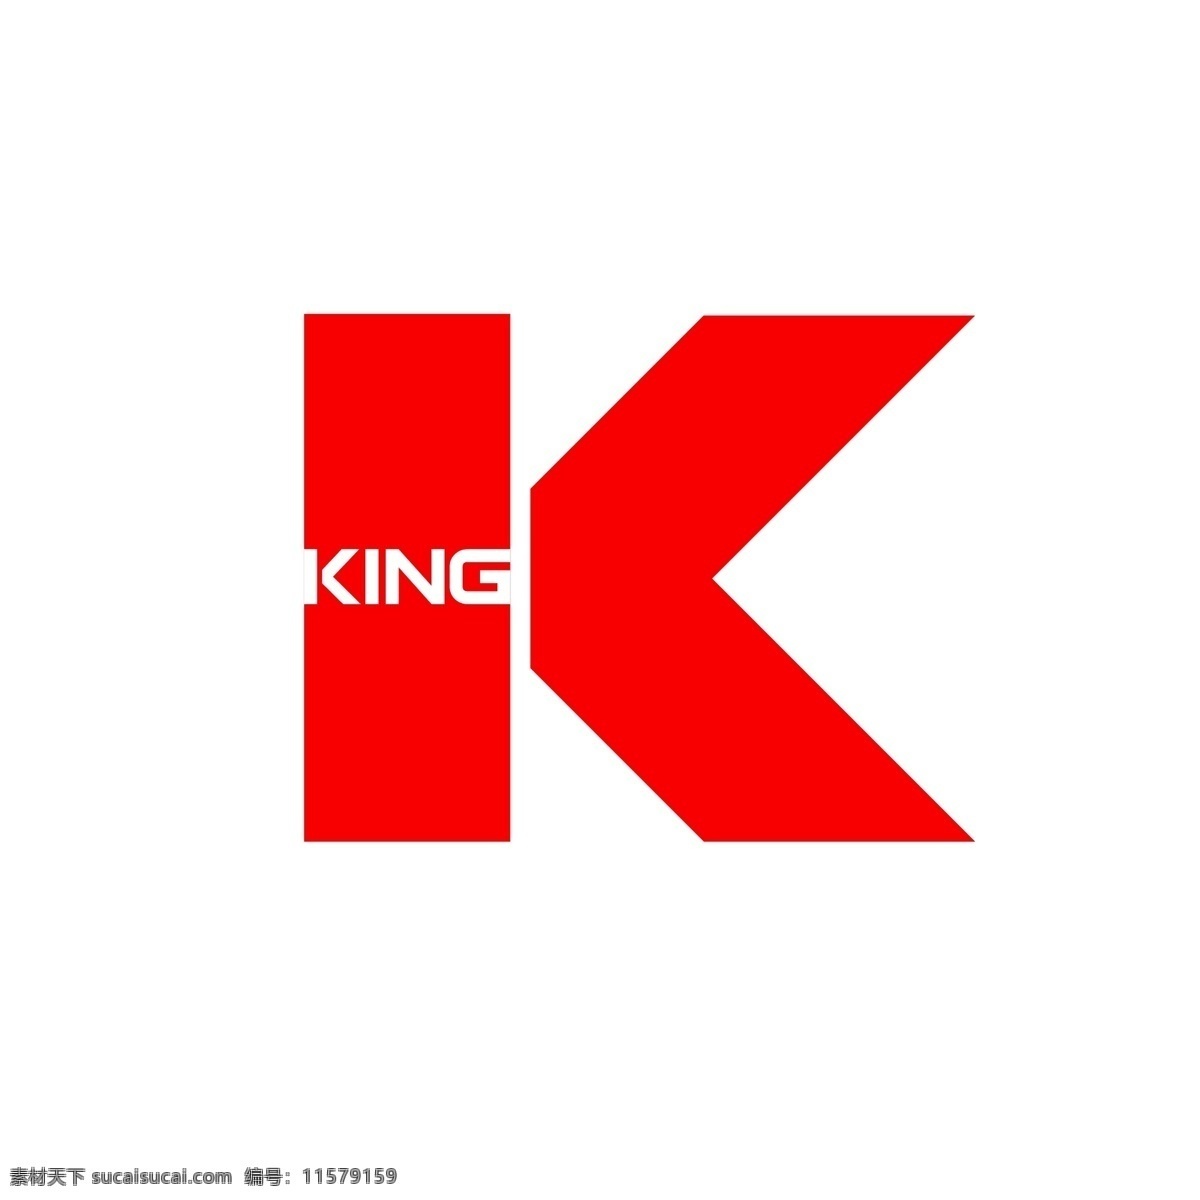 king 标志 自创 原创 logo k 王 王者 标识 图标 矢量 企业 标识标志图标